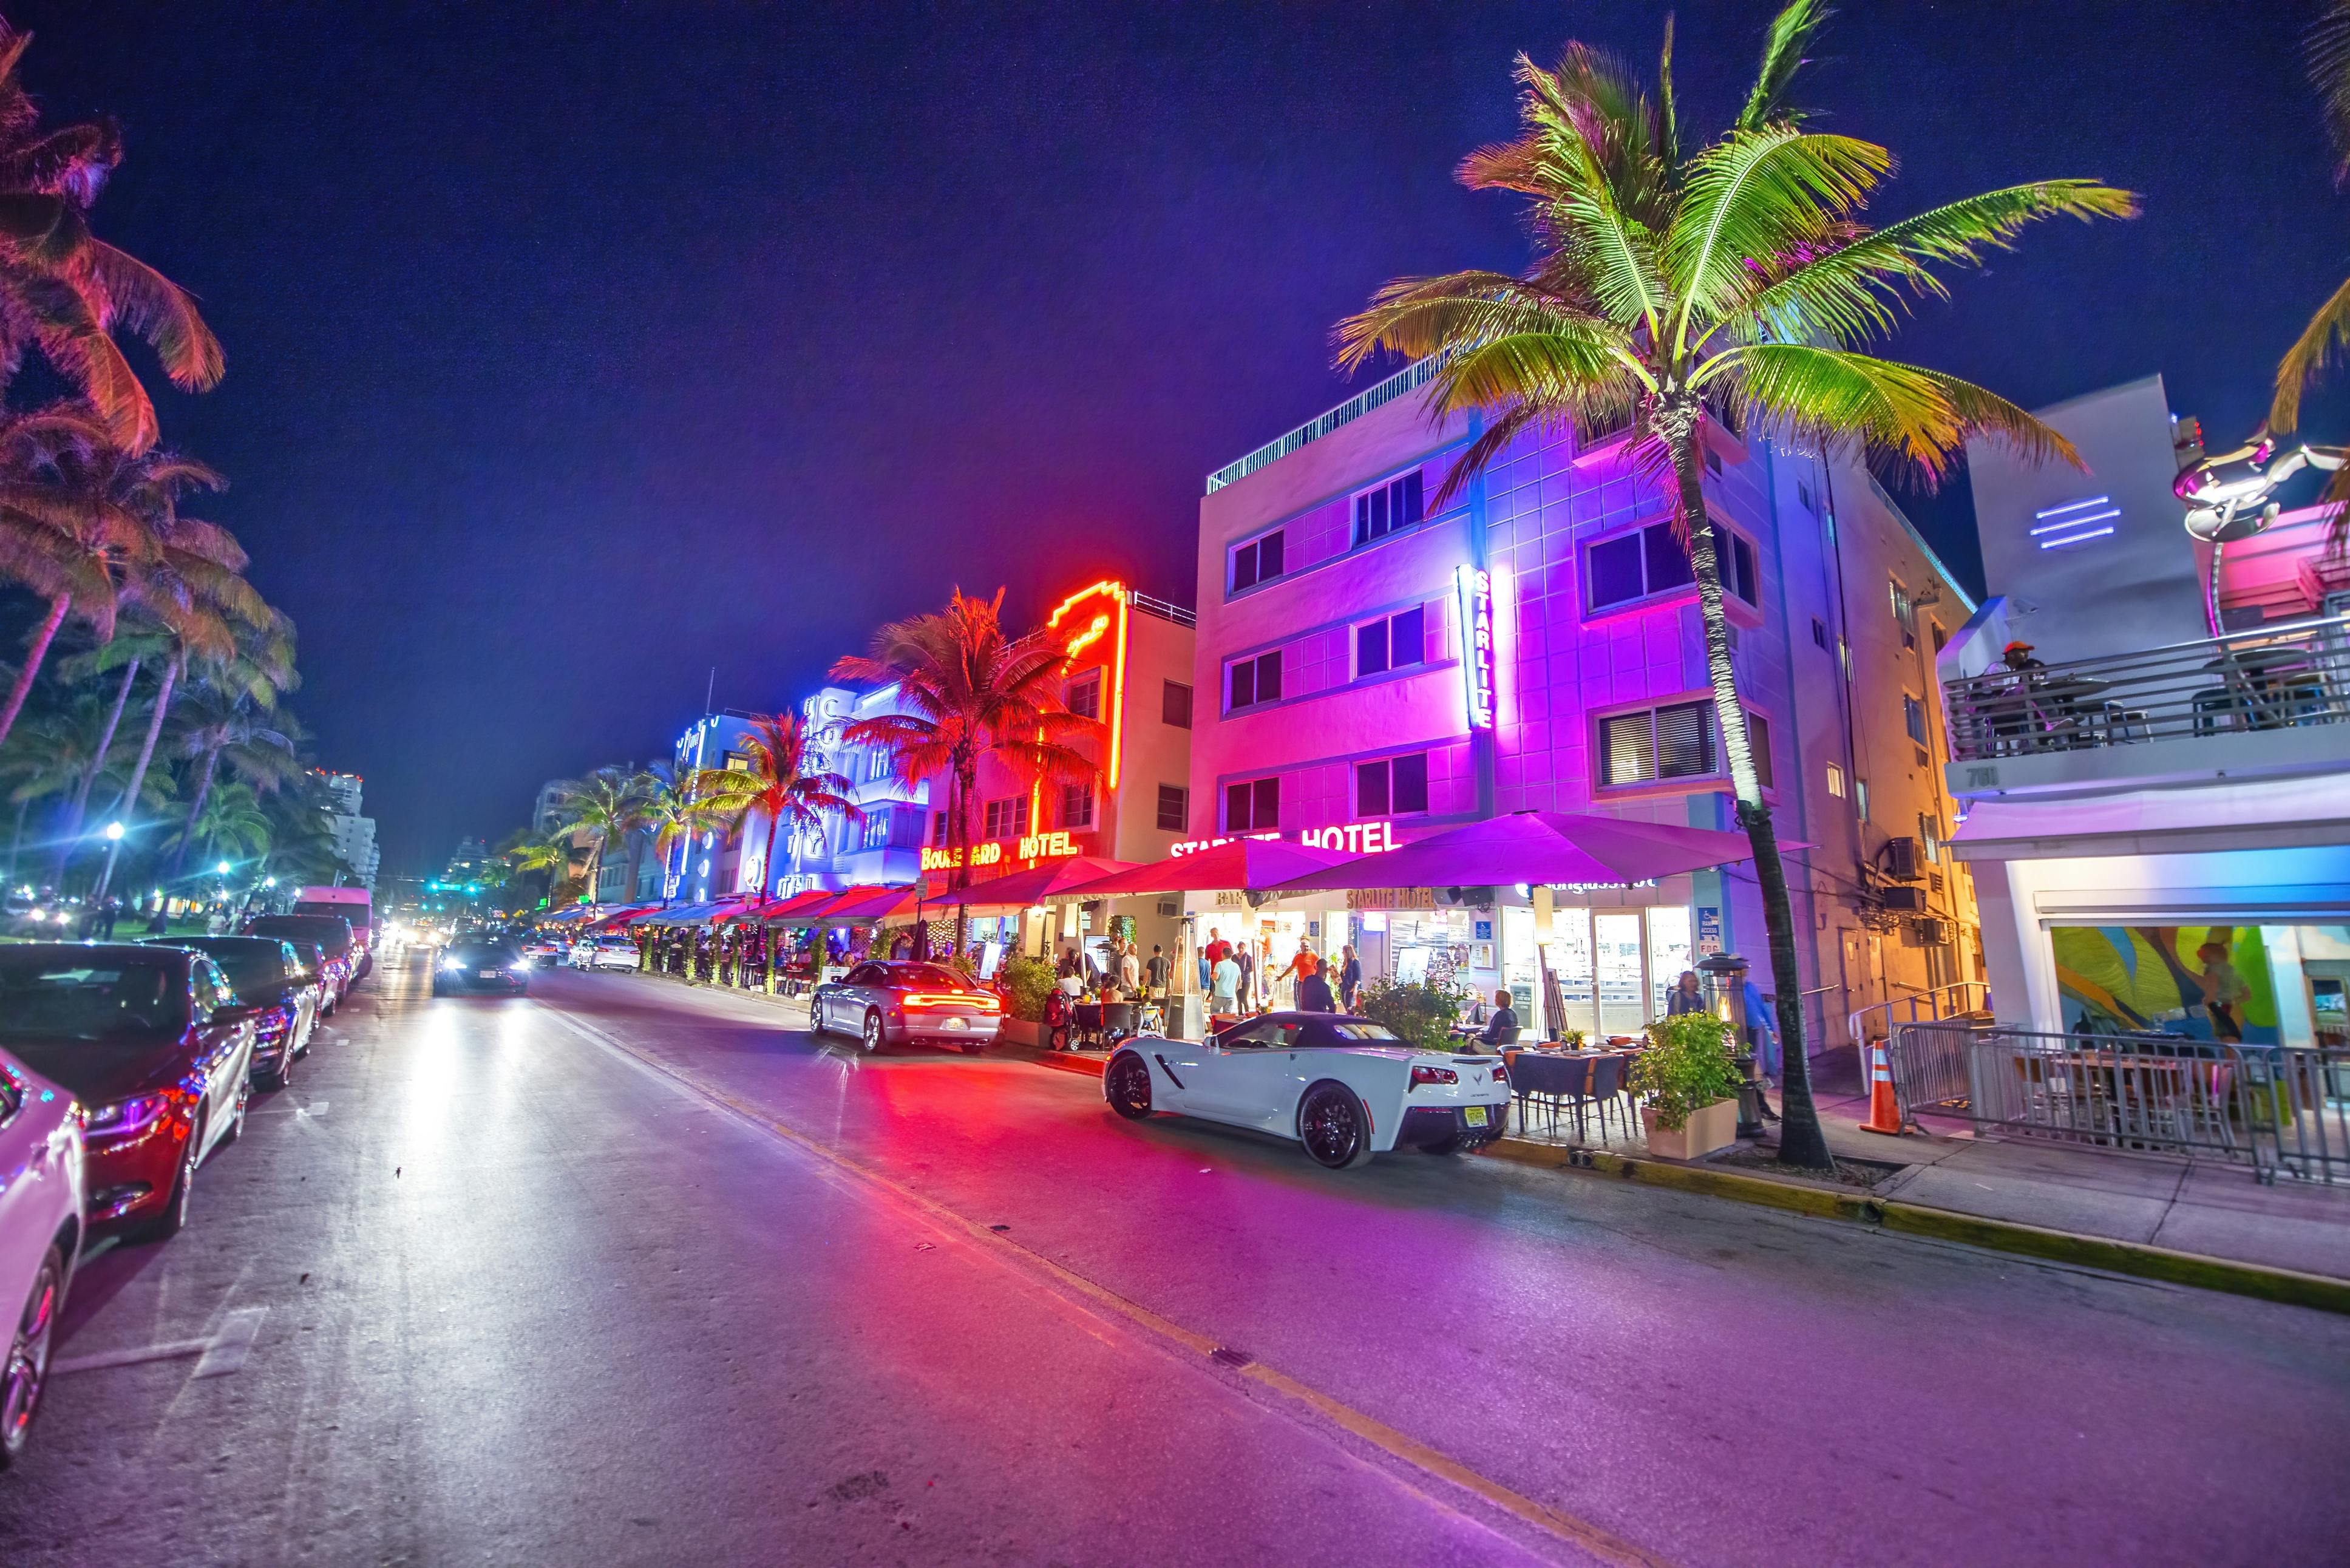 Scenic Miami night tour with Skyview Miami Wheel tickets